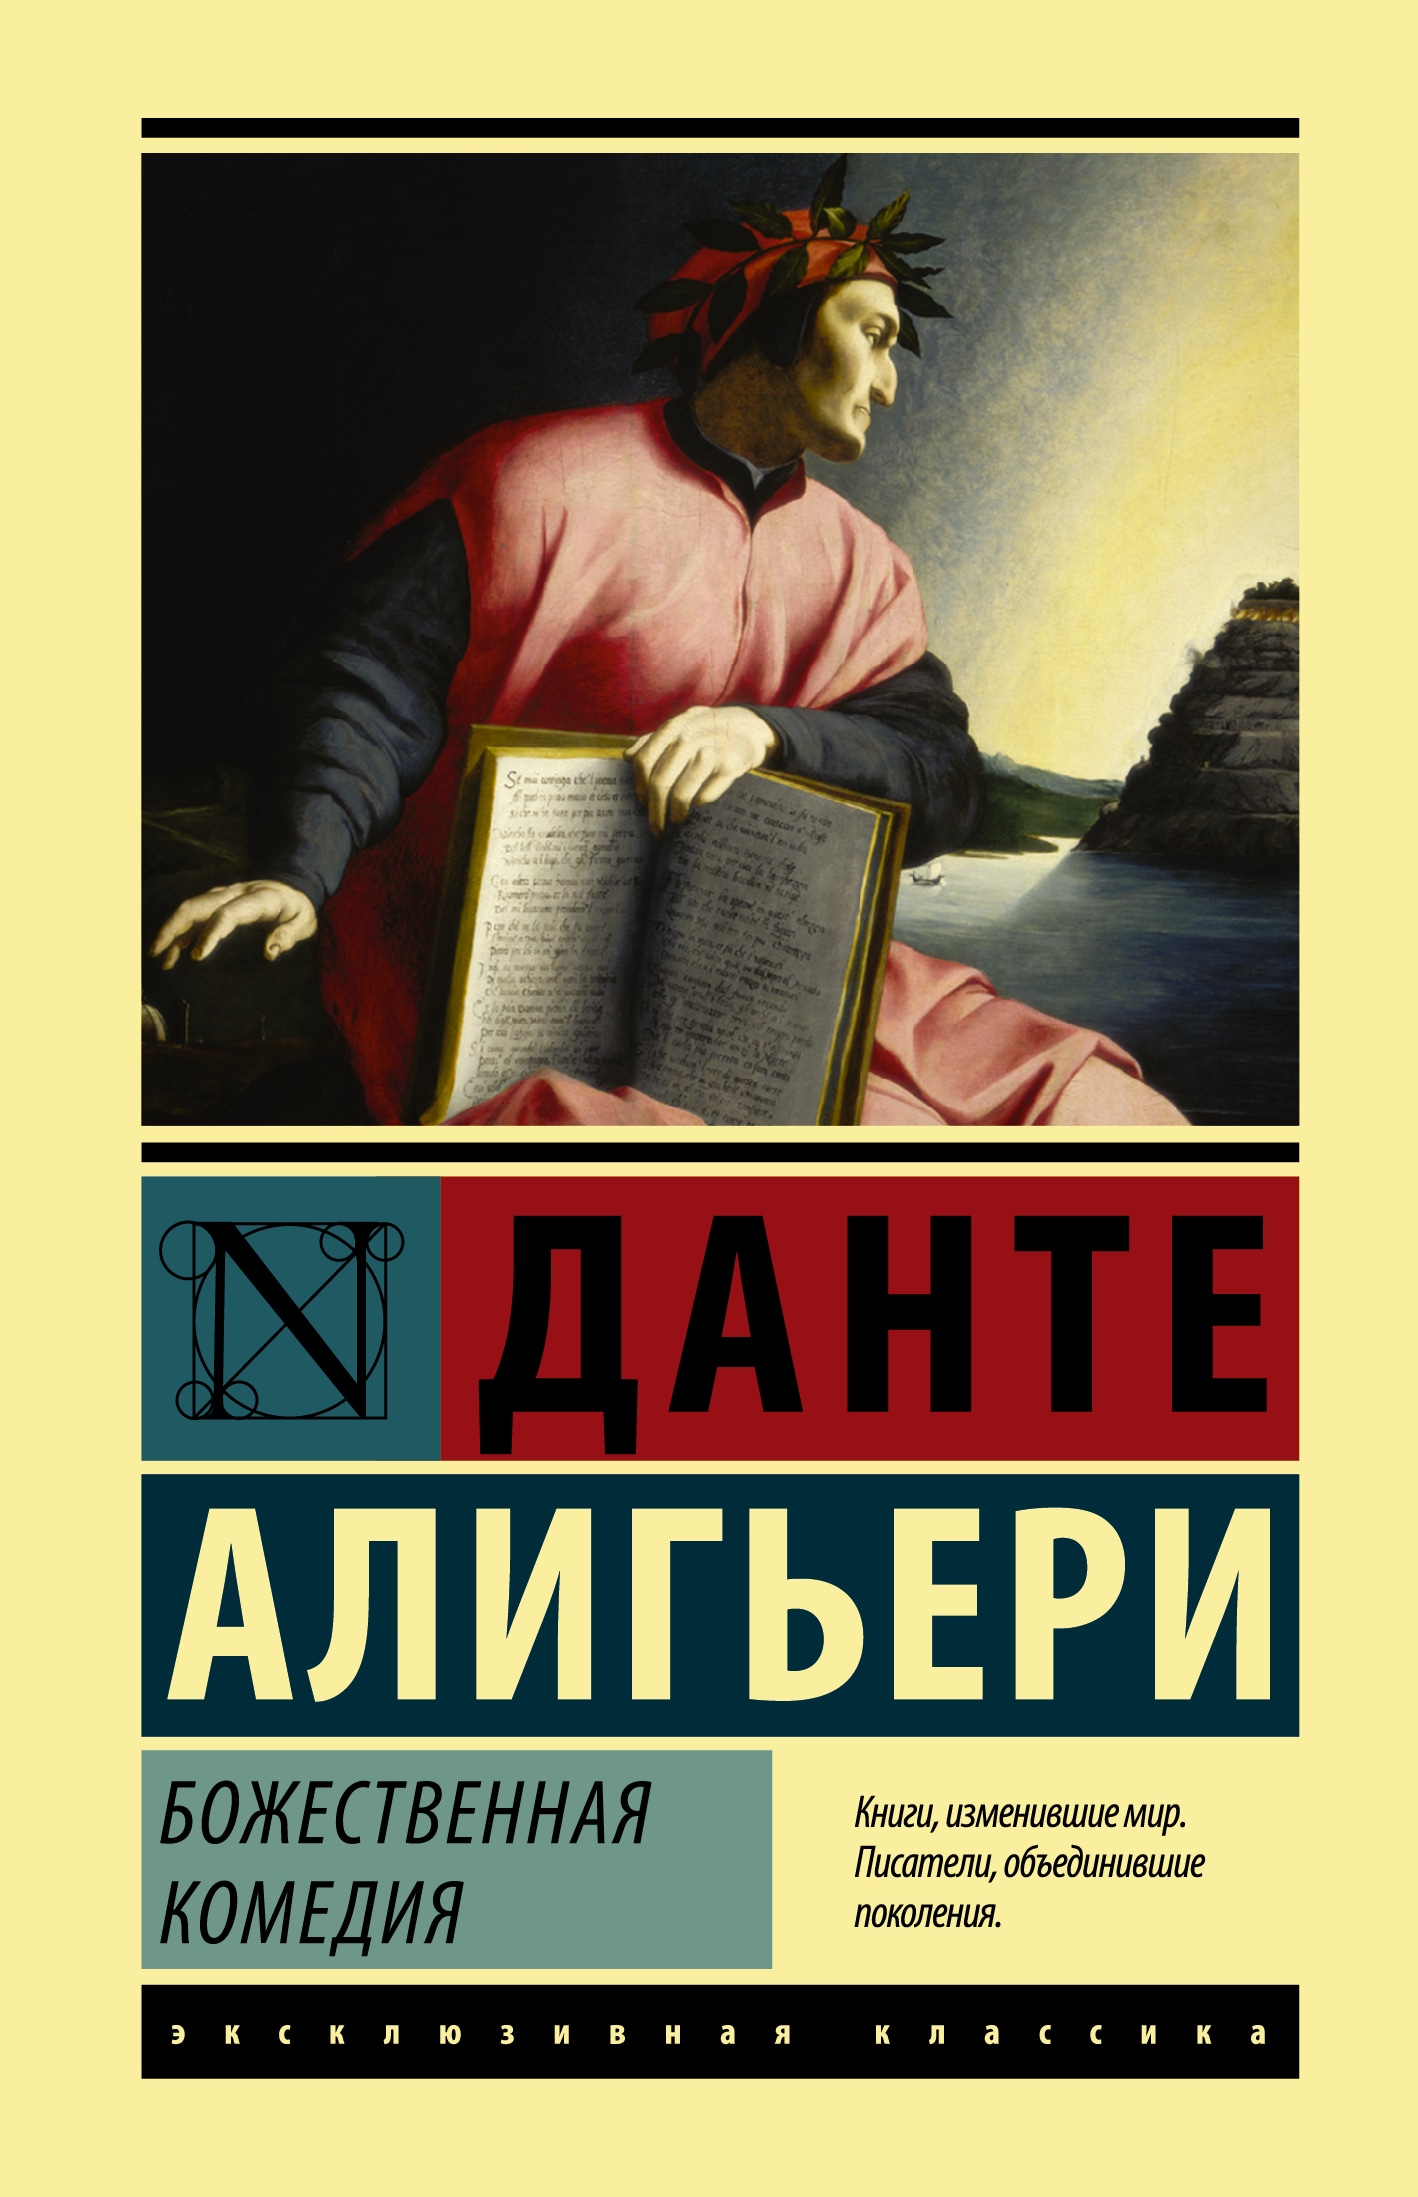 Book “Божественная Комедия” by Данте Алигьери — March 6, 2020